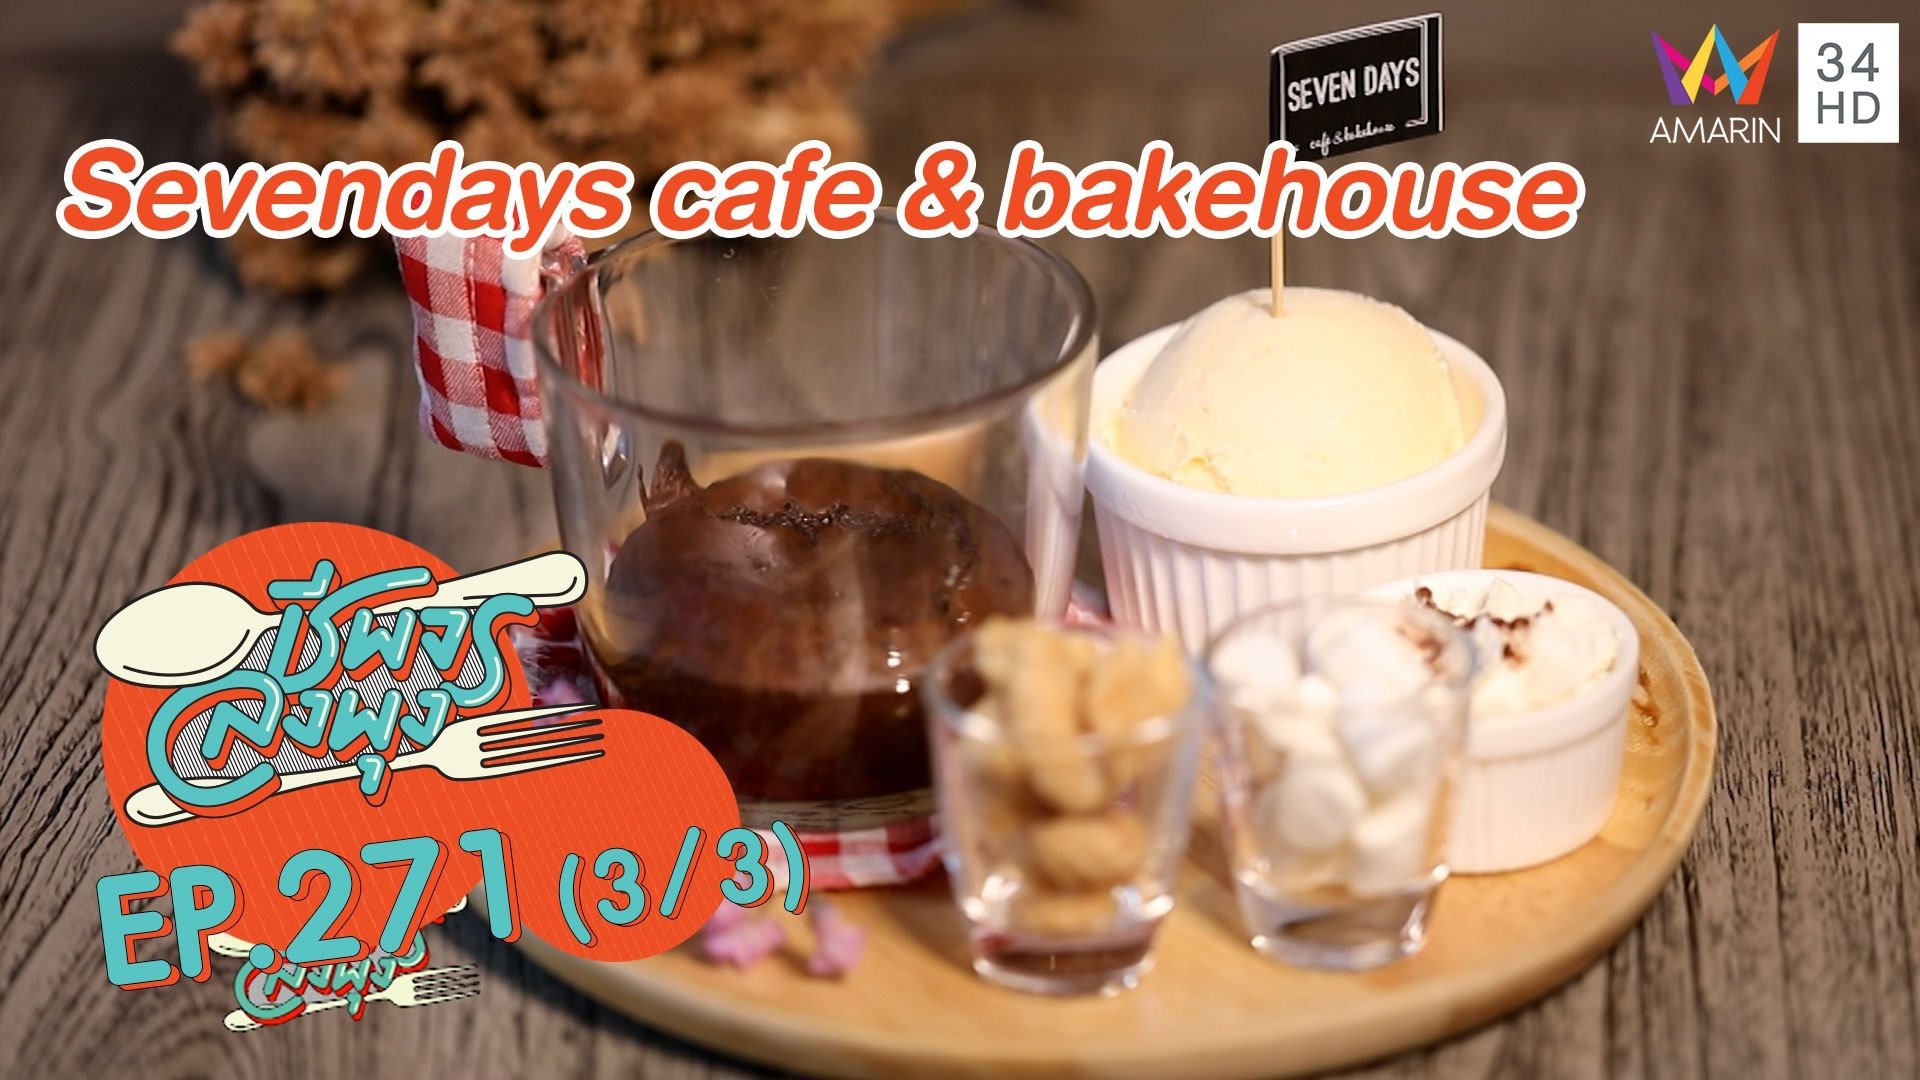 เด็ดทั้งคาวหวาน 'ร้าน Sevendays cafe & bakehouse'  | ชีพจรลงพุง | 24 ม.ค. 64 (3/3) | AMARIN TVHD34